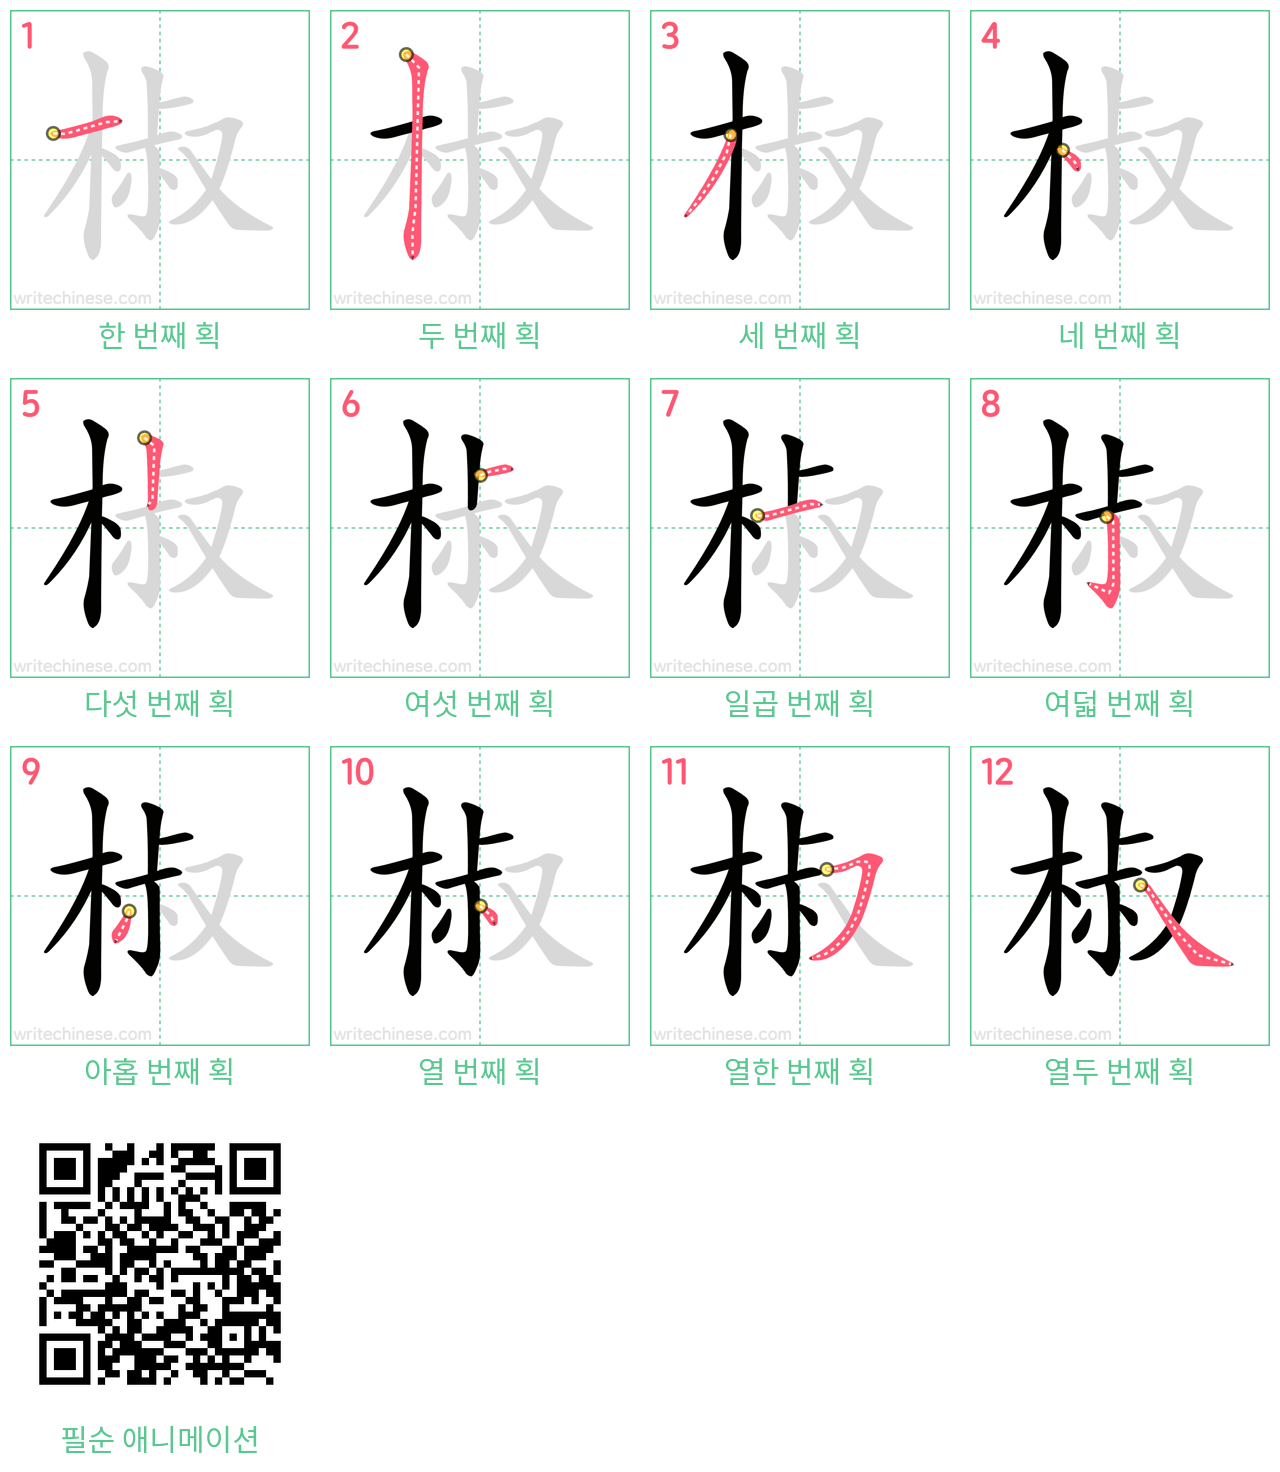 椒 step-by-step stroke order diagrams